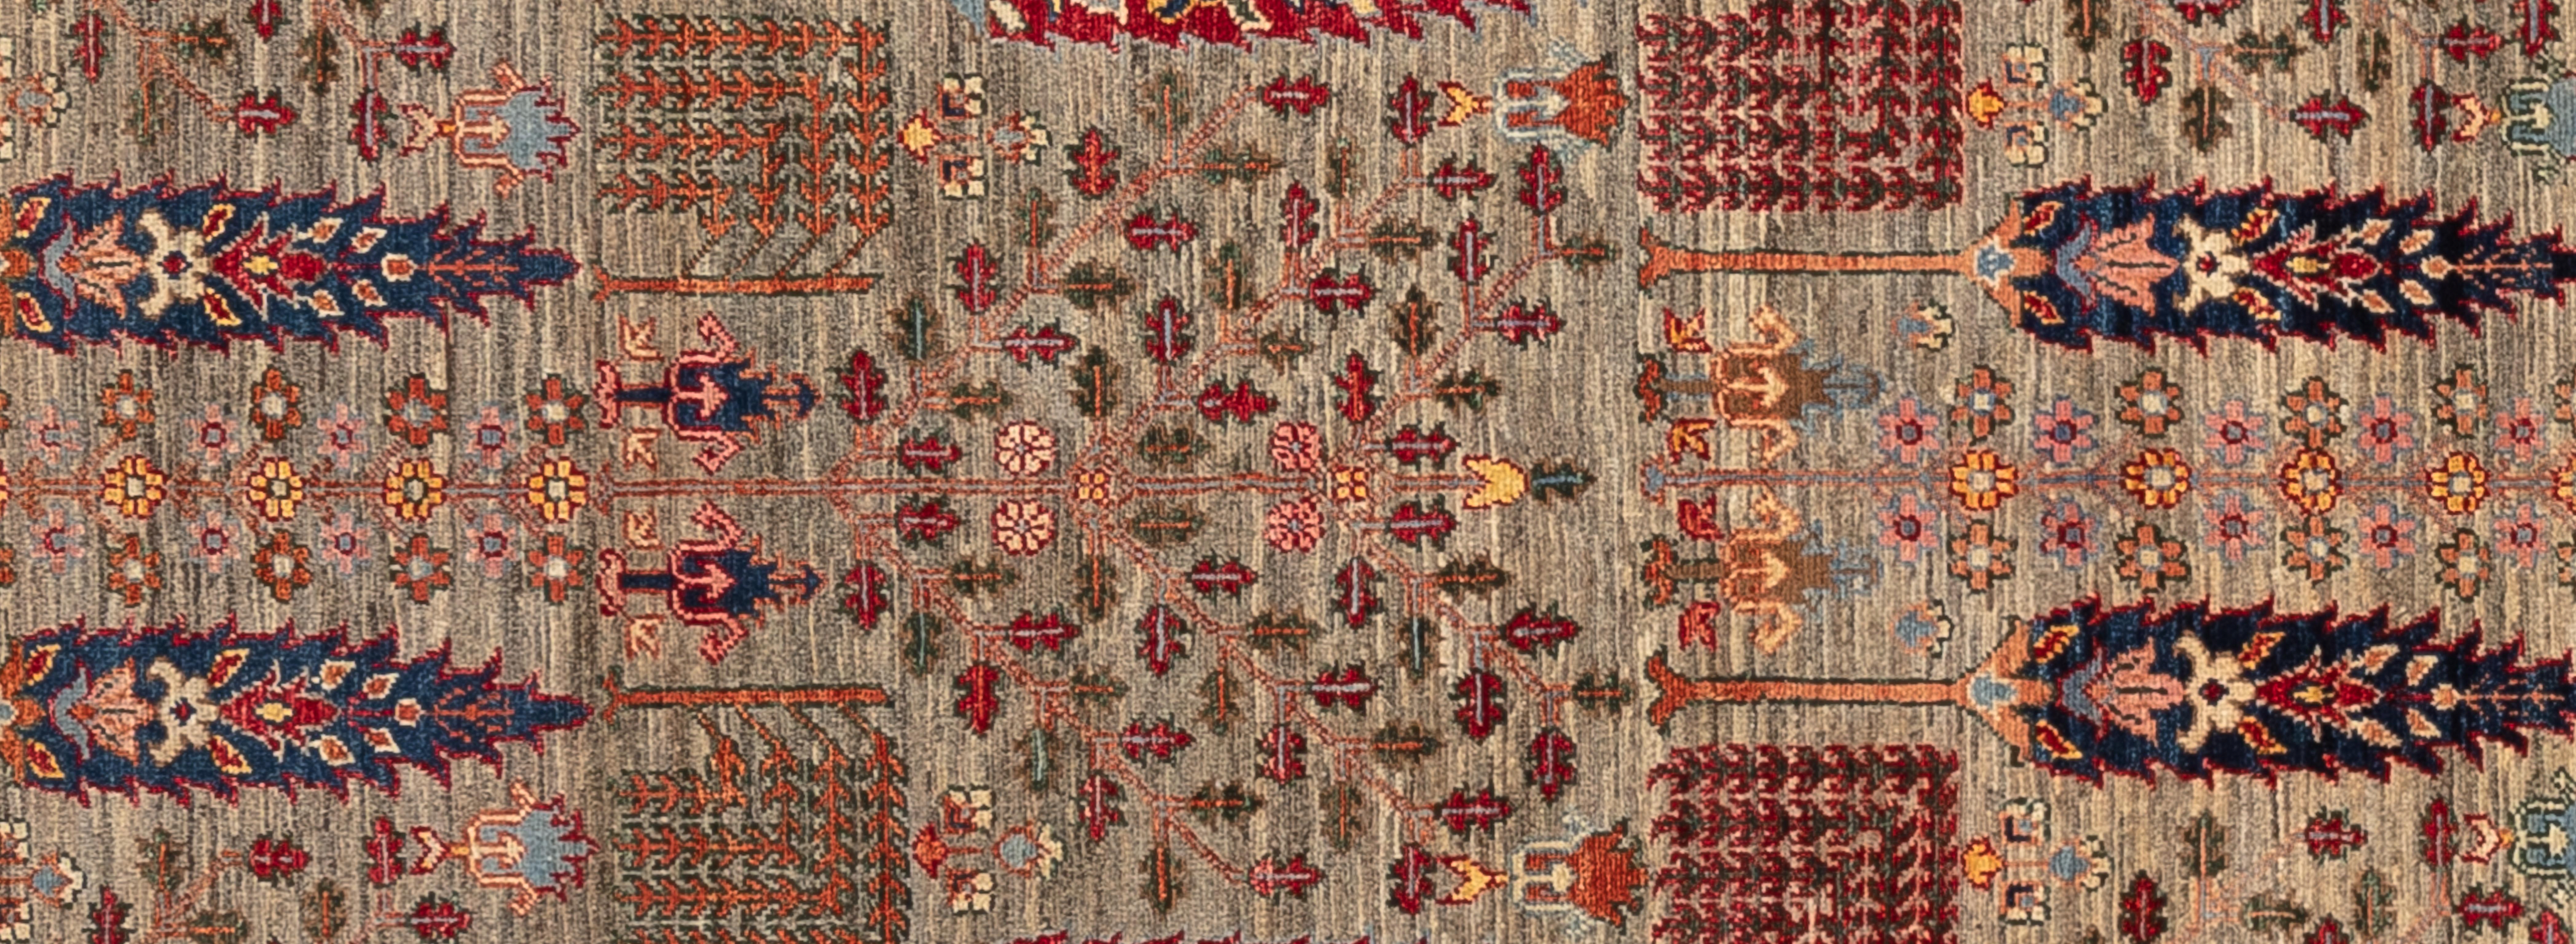 Dieser gedämpfte Tribal-Teppich zeichnet sich durch atemberaubende, aber bescheidene Details aus. Wunderschön handgewebt in Pakistan und aus 100% handgesponnener Wolle hergestellt.

Größe - 3'5